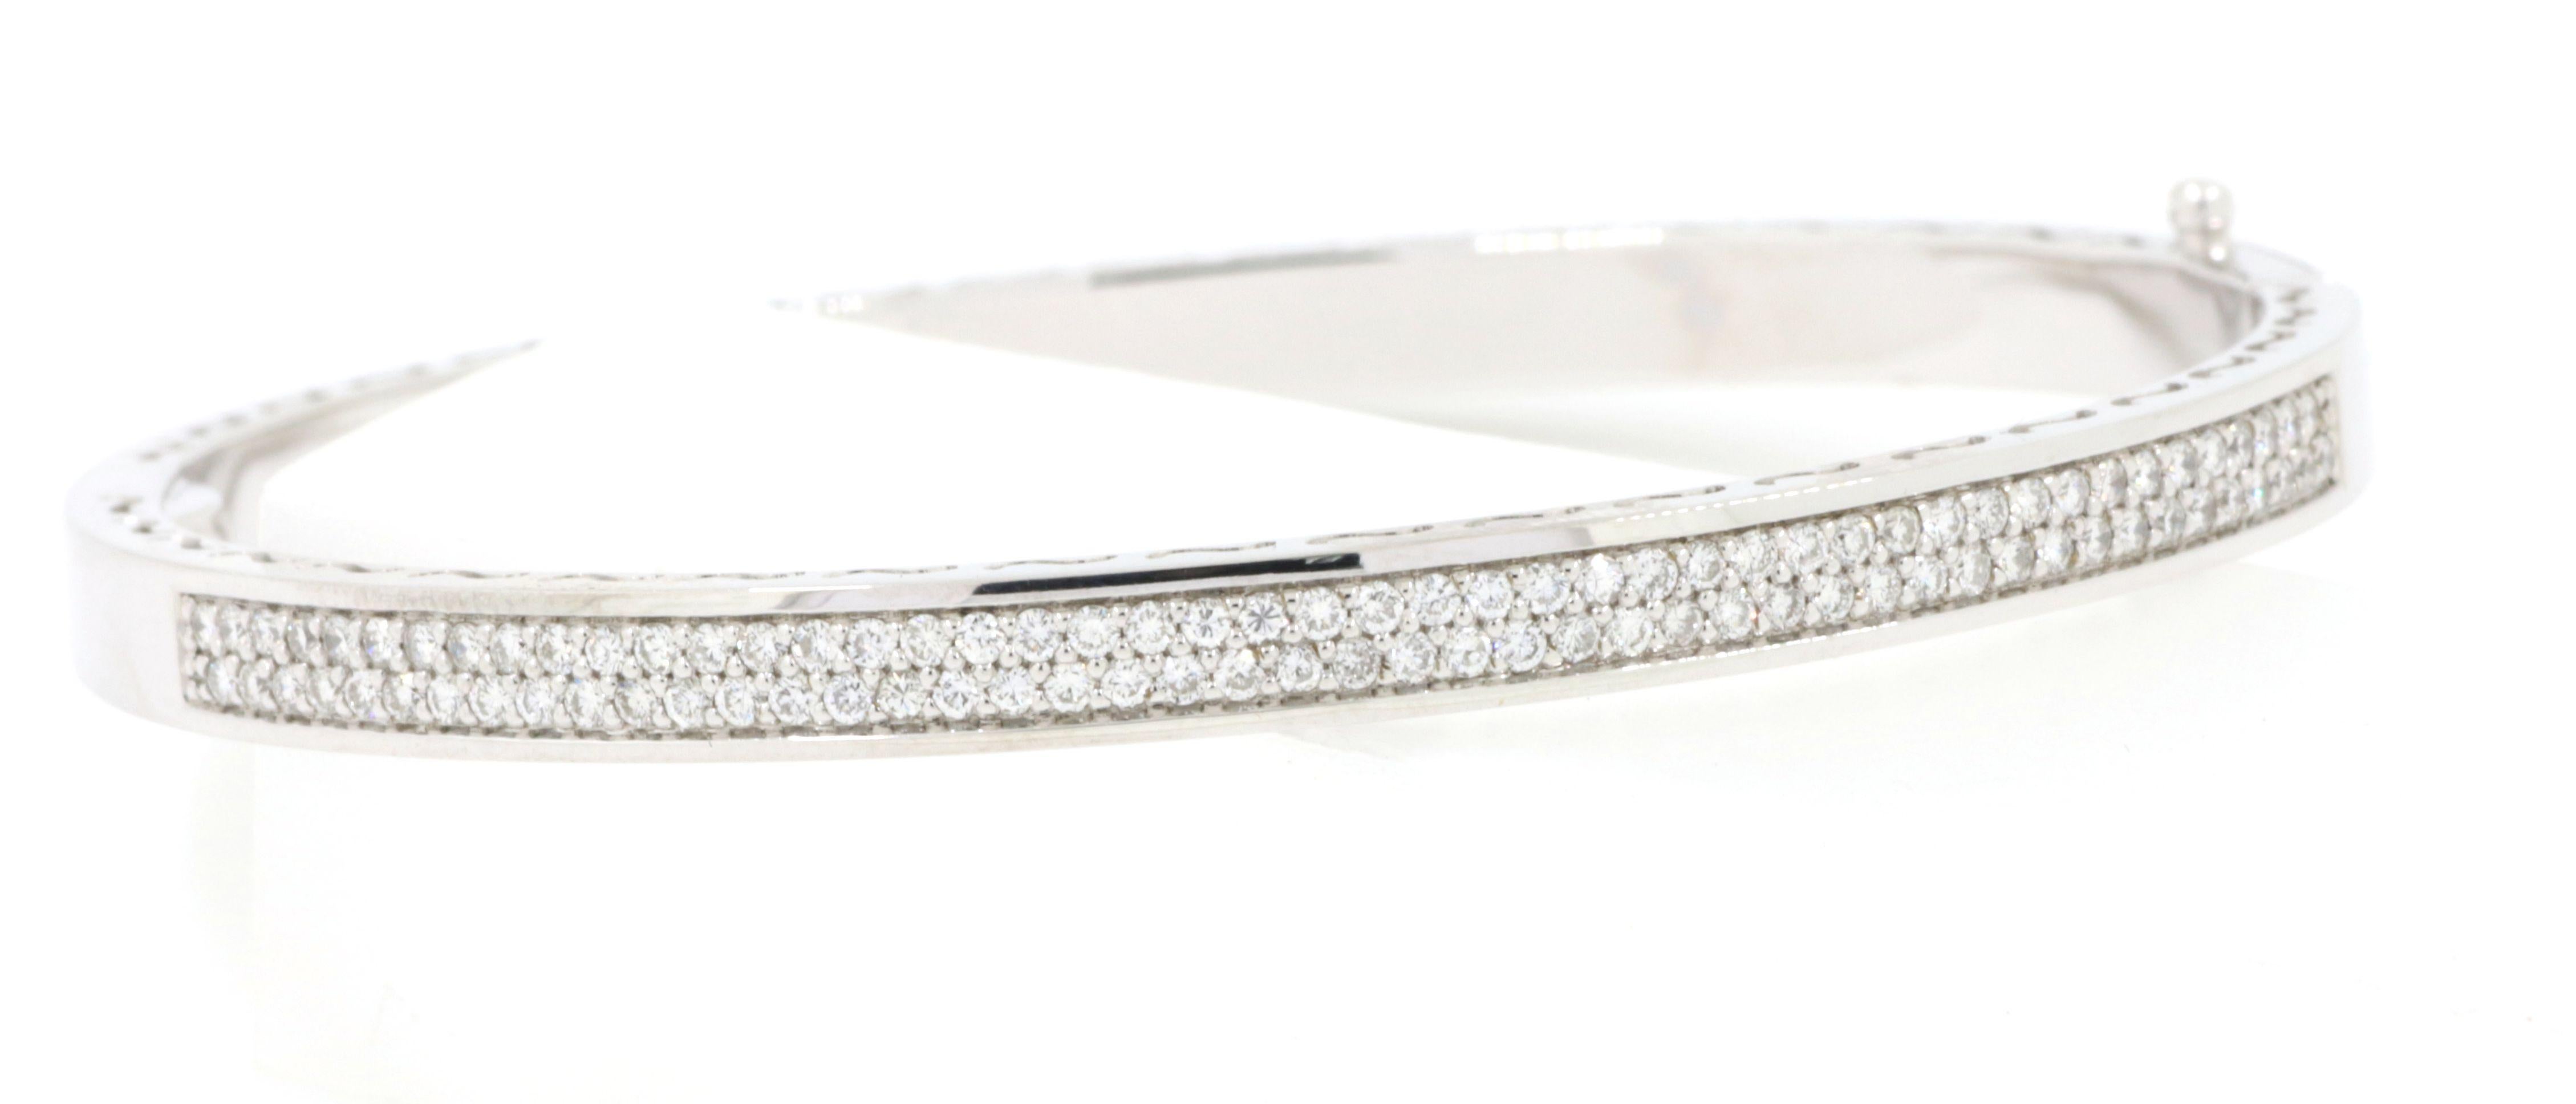 Das Weißgold-Diamantarmband ist ein atemberaubendes Schmuckstück, das Eleganz und Alltagstauglichkeit nahtlos miteinander verbindet. Dieses Armband aus 18-karätigem Weißgold besticht durch 0,97 Karat runde Diamanten, die in einer Reihe mit